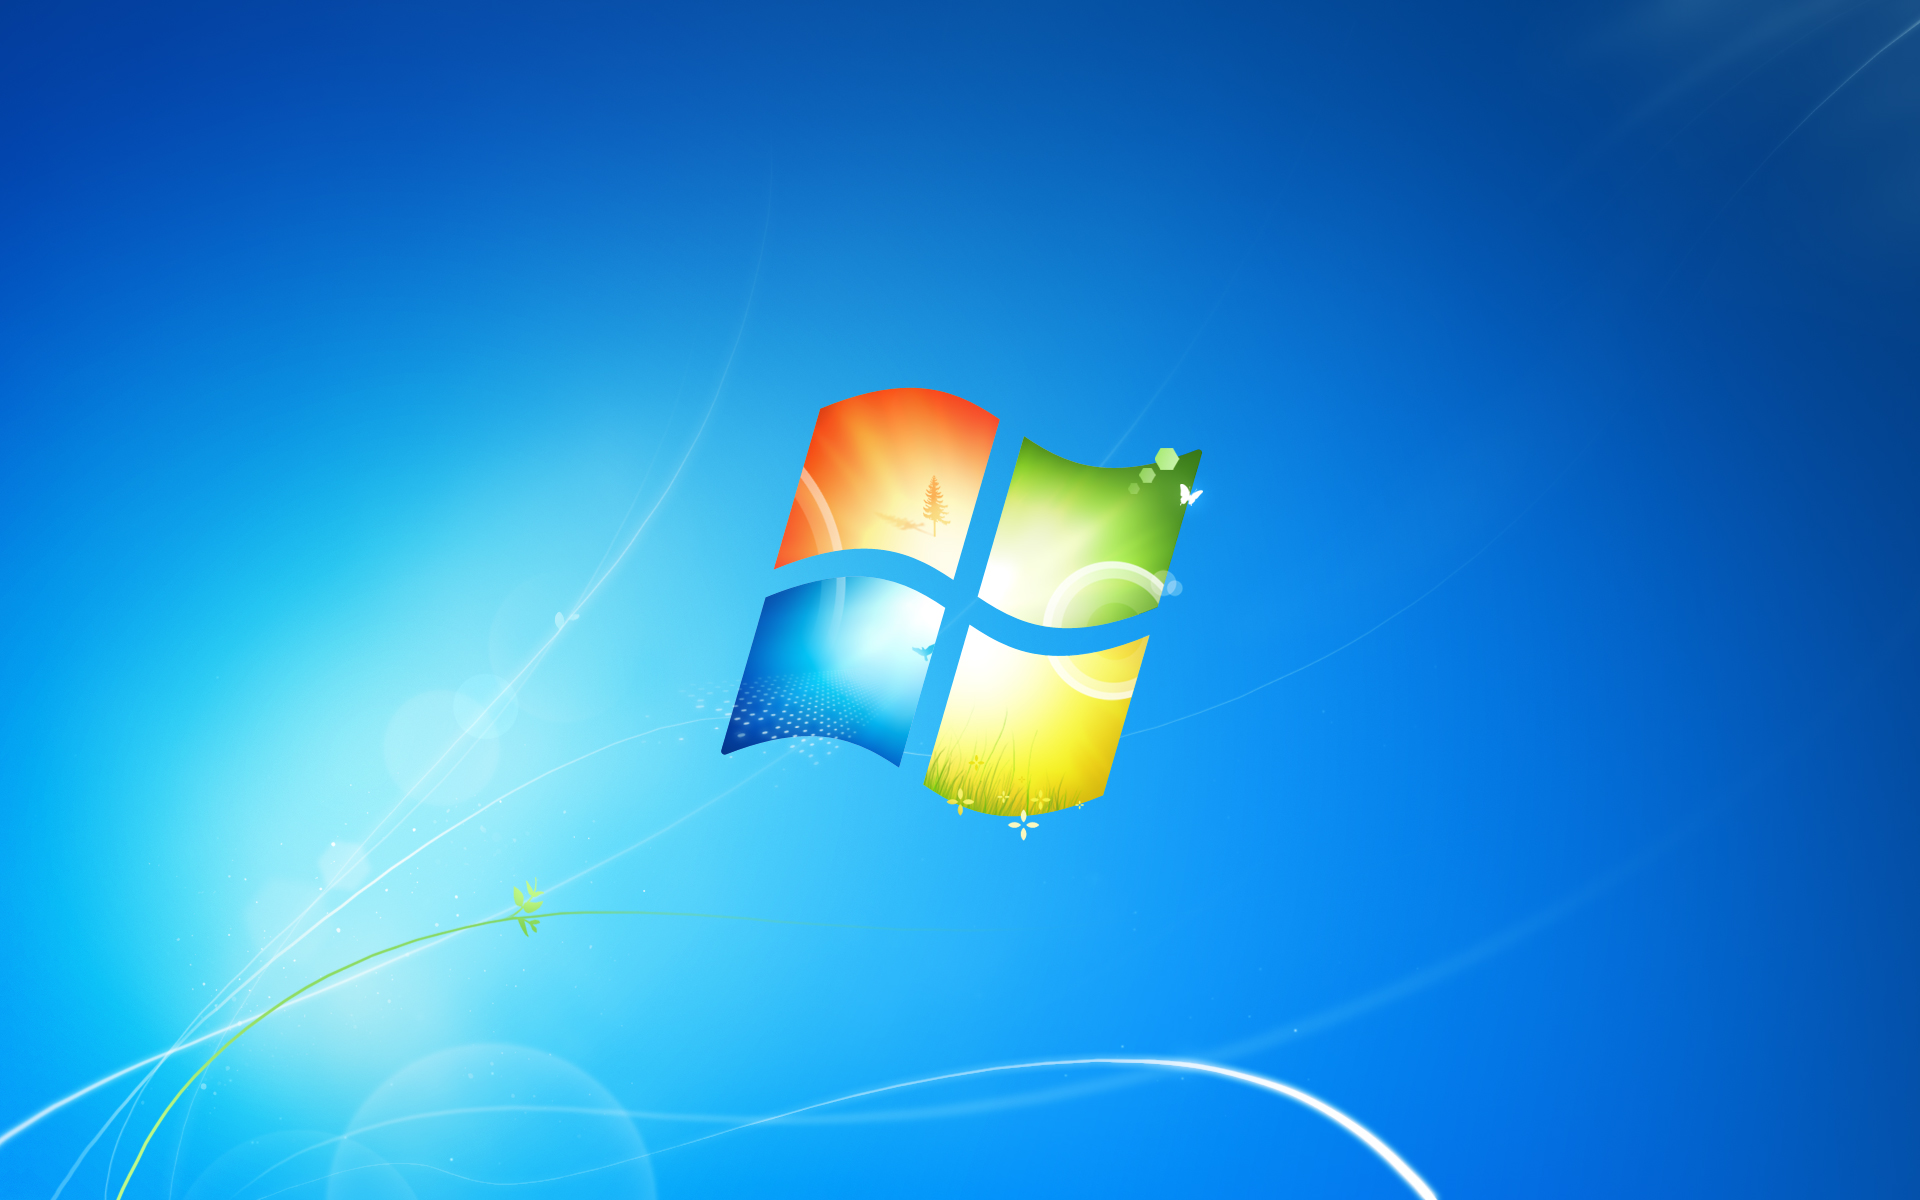 Hình nền Windows 7: Thay đổi không gian làm việc của bạn với những hình nền tuyệt đẹp cho Windows 7! Tạo sự mới mẻ và phù hợp với phong cách của bạn. Nhấn vào ảnh để tìm kiếm hàng ngàn hình nền miễn phí cho Windows 7 của bạn! 